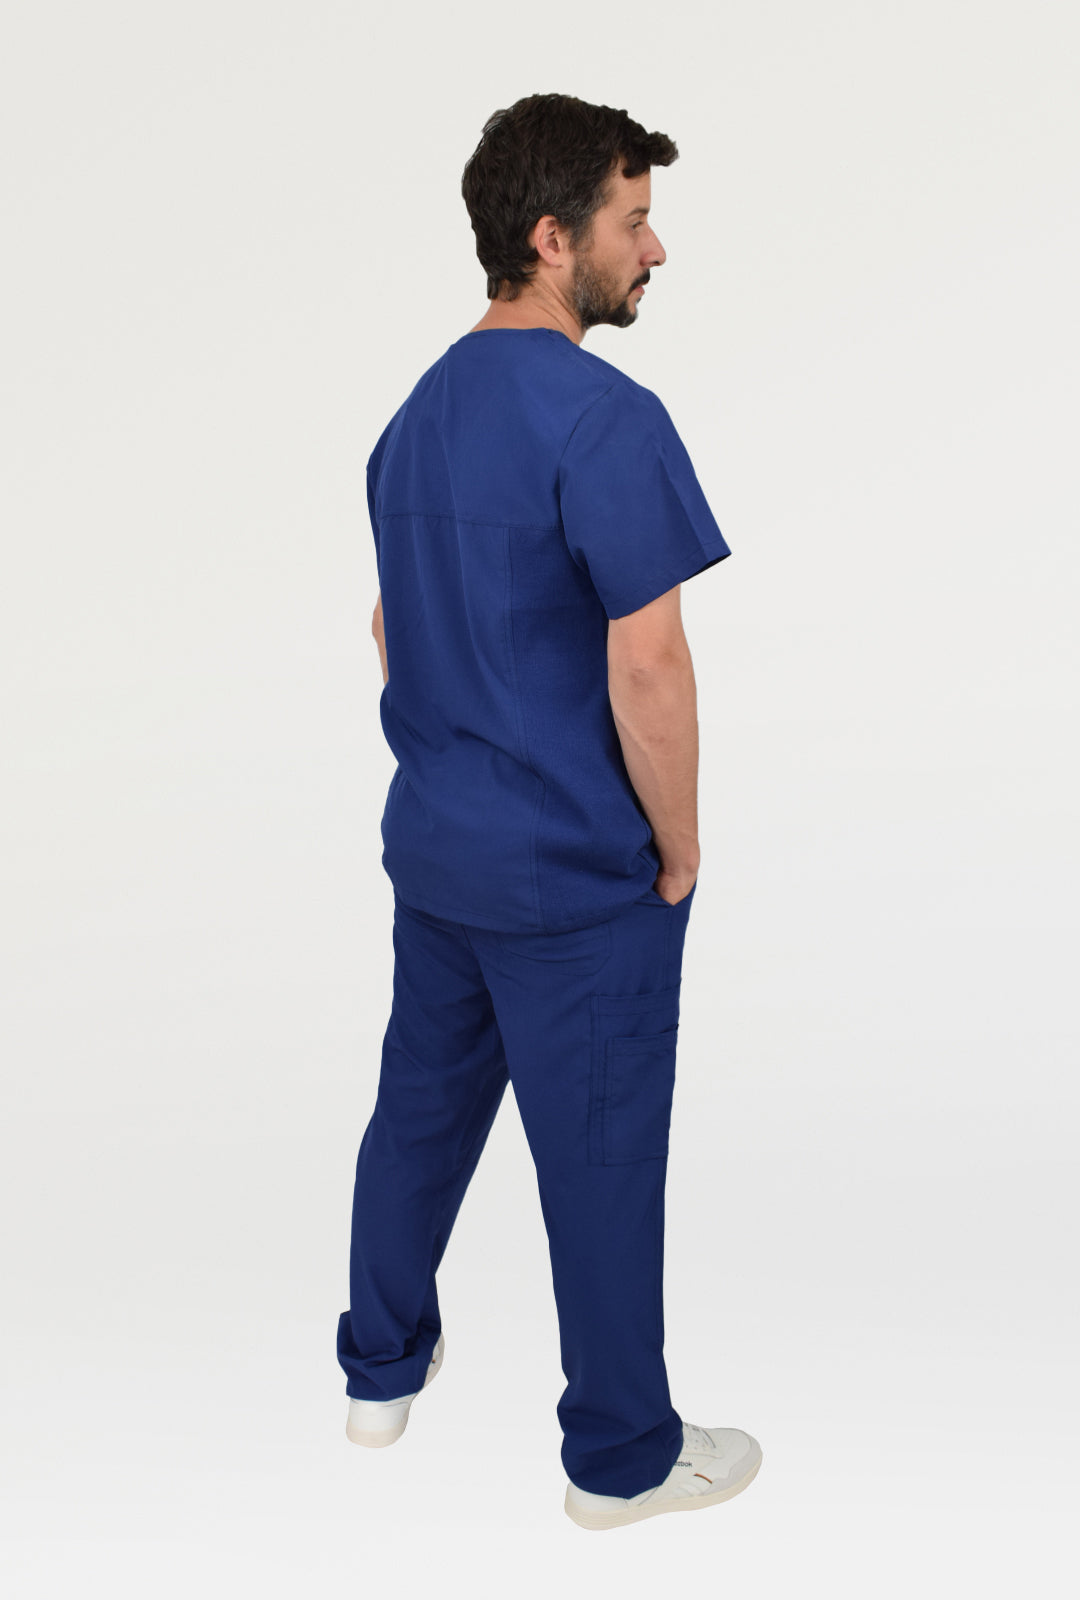 uniforme medico azul